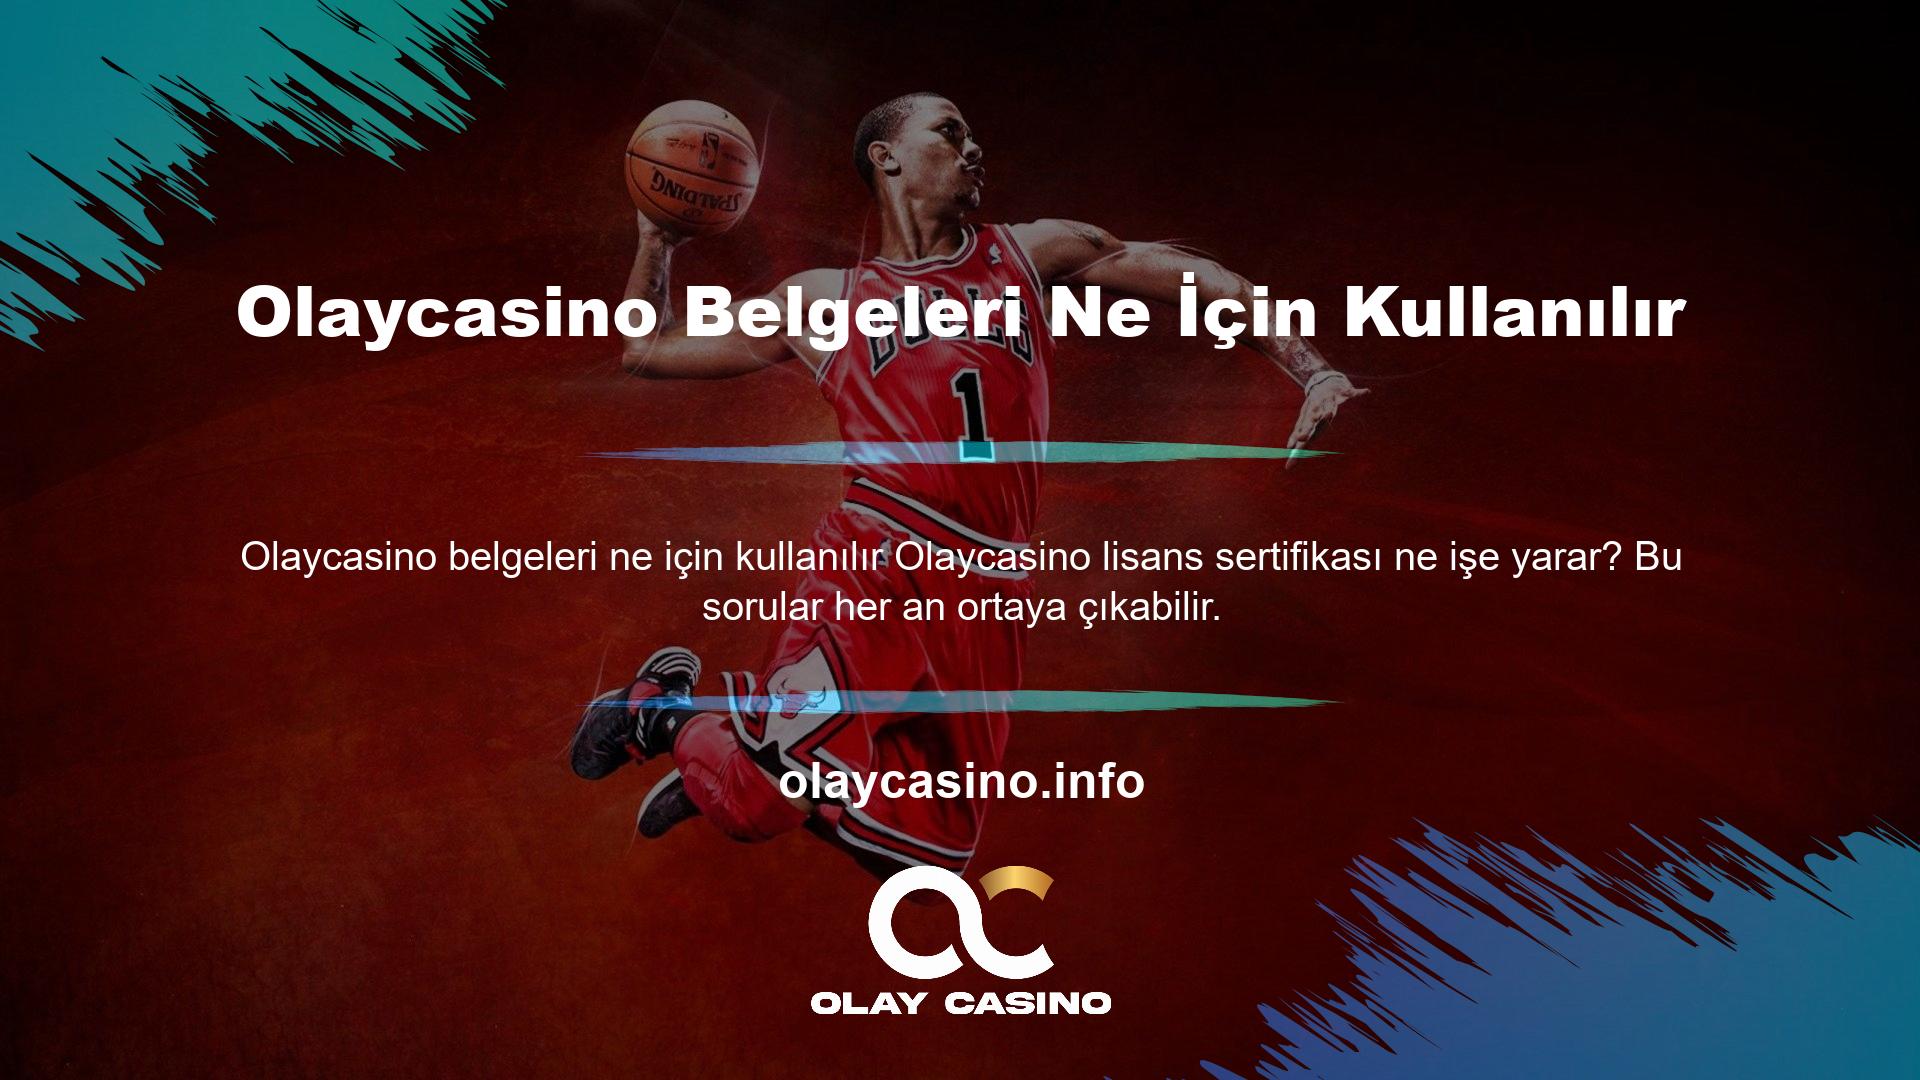 Bu lisans, şirketin Olaycasino web sitesinde çeşitli para ve casino oyunlarını oynamasına olanak tanır ve müşterilerine ve lisans sahiplerine karşı sorumlu davranmayı taahhüt eder